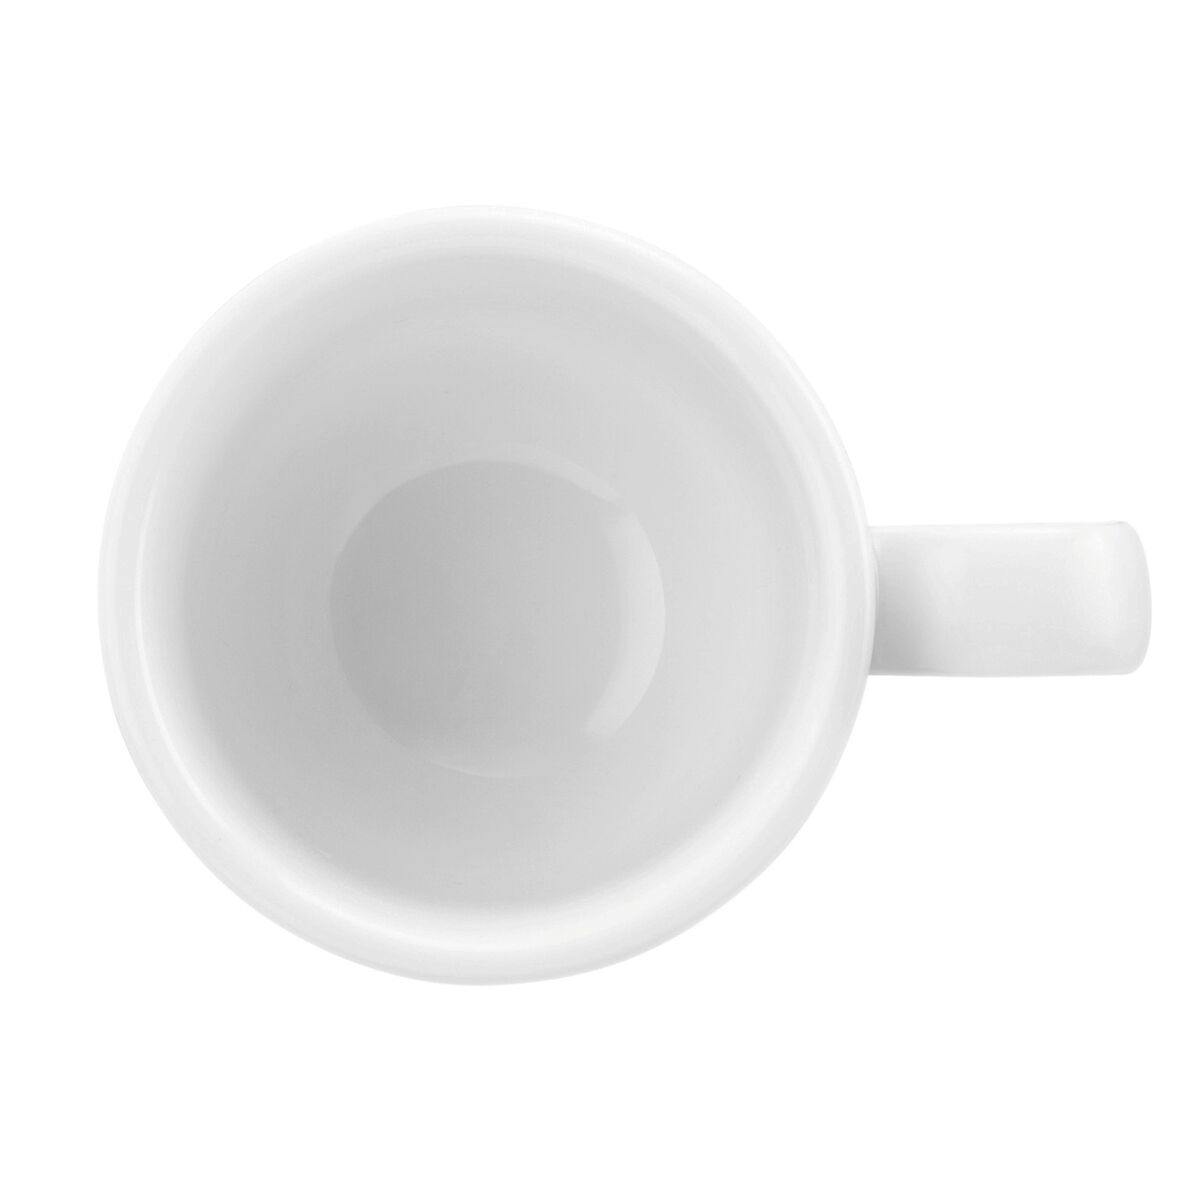 (6 pieces) Seltmann Weiden - mocha cup - 0,08 liter